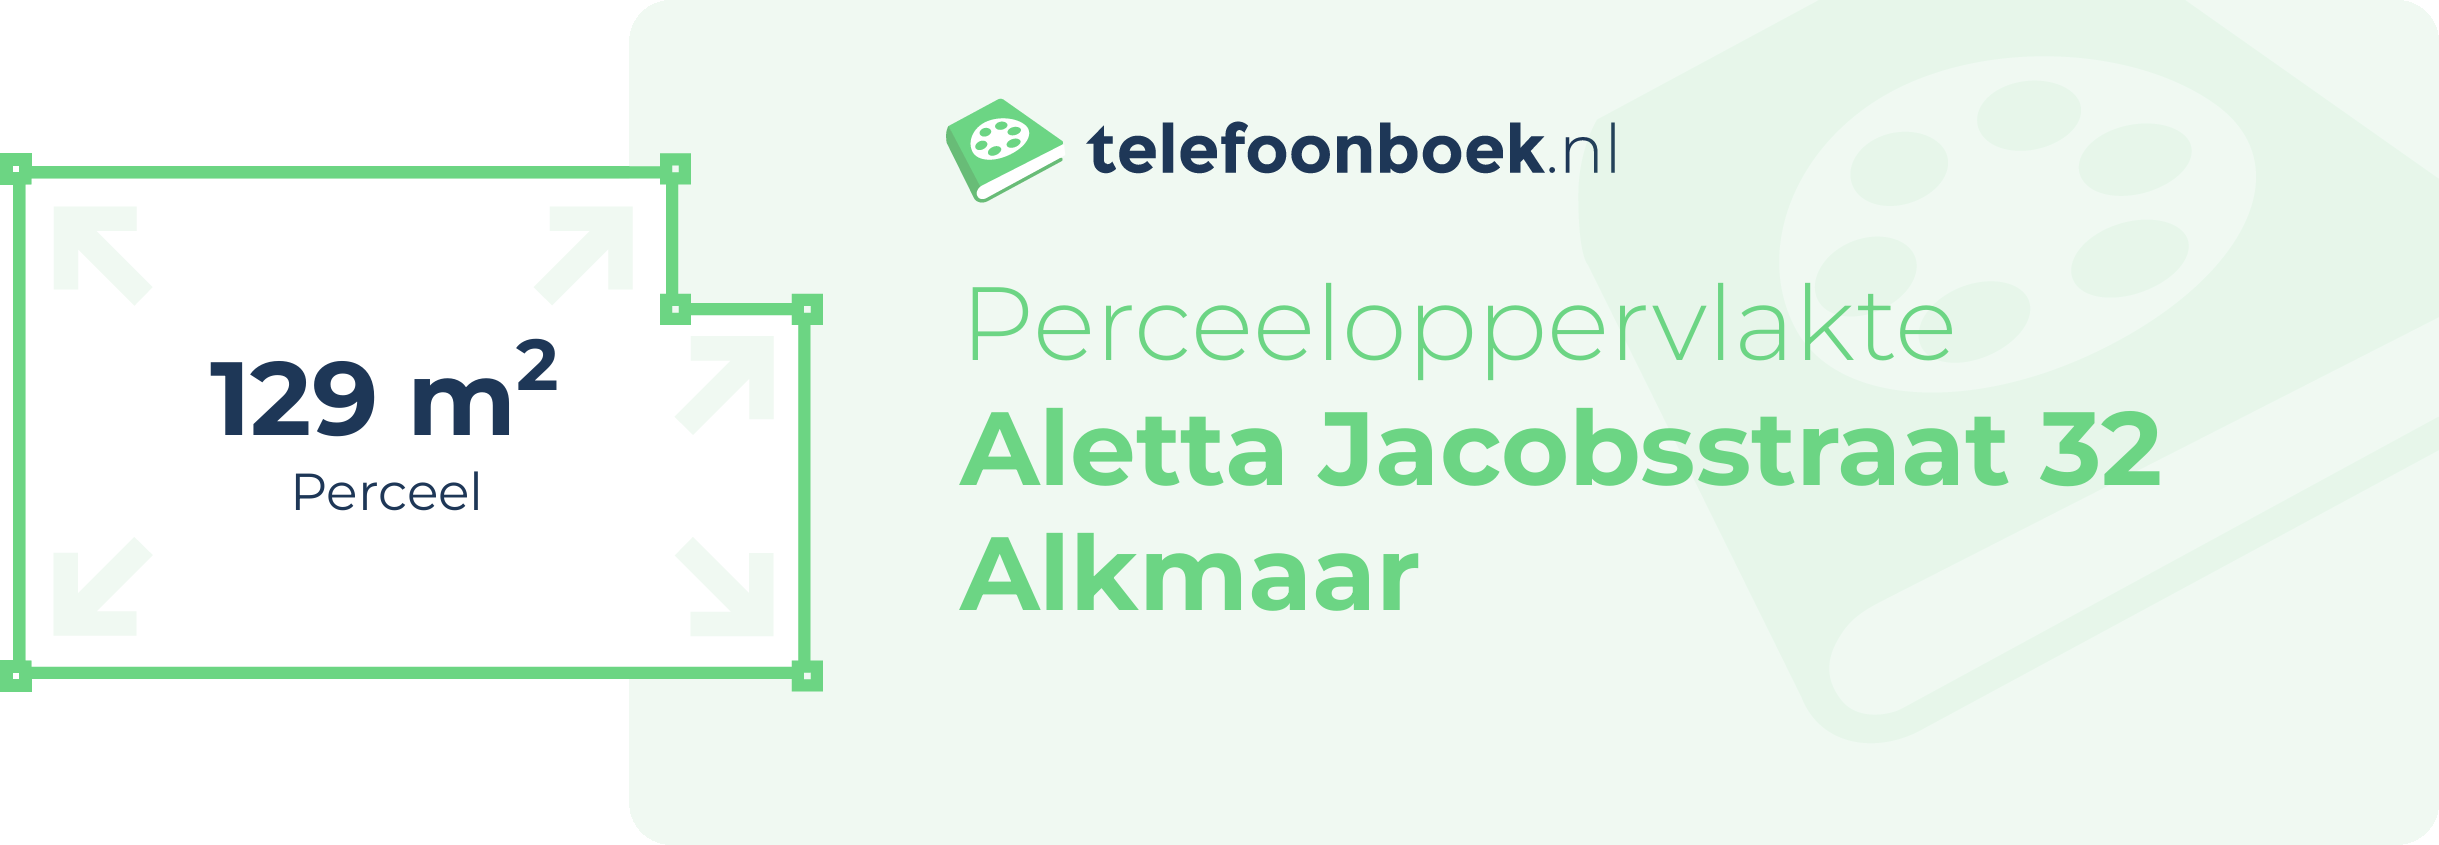 Perceeloppervlakte Aletta Jacobsstraat 32 Alkmaar